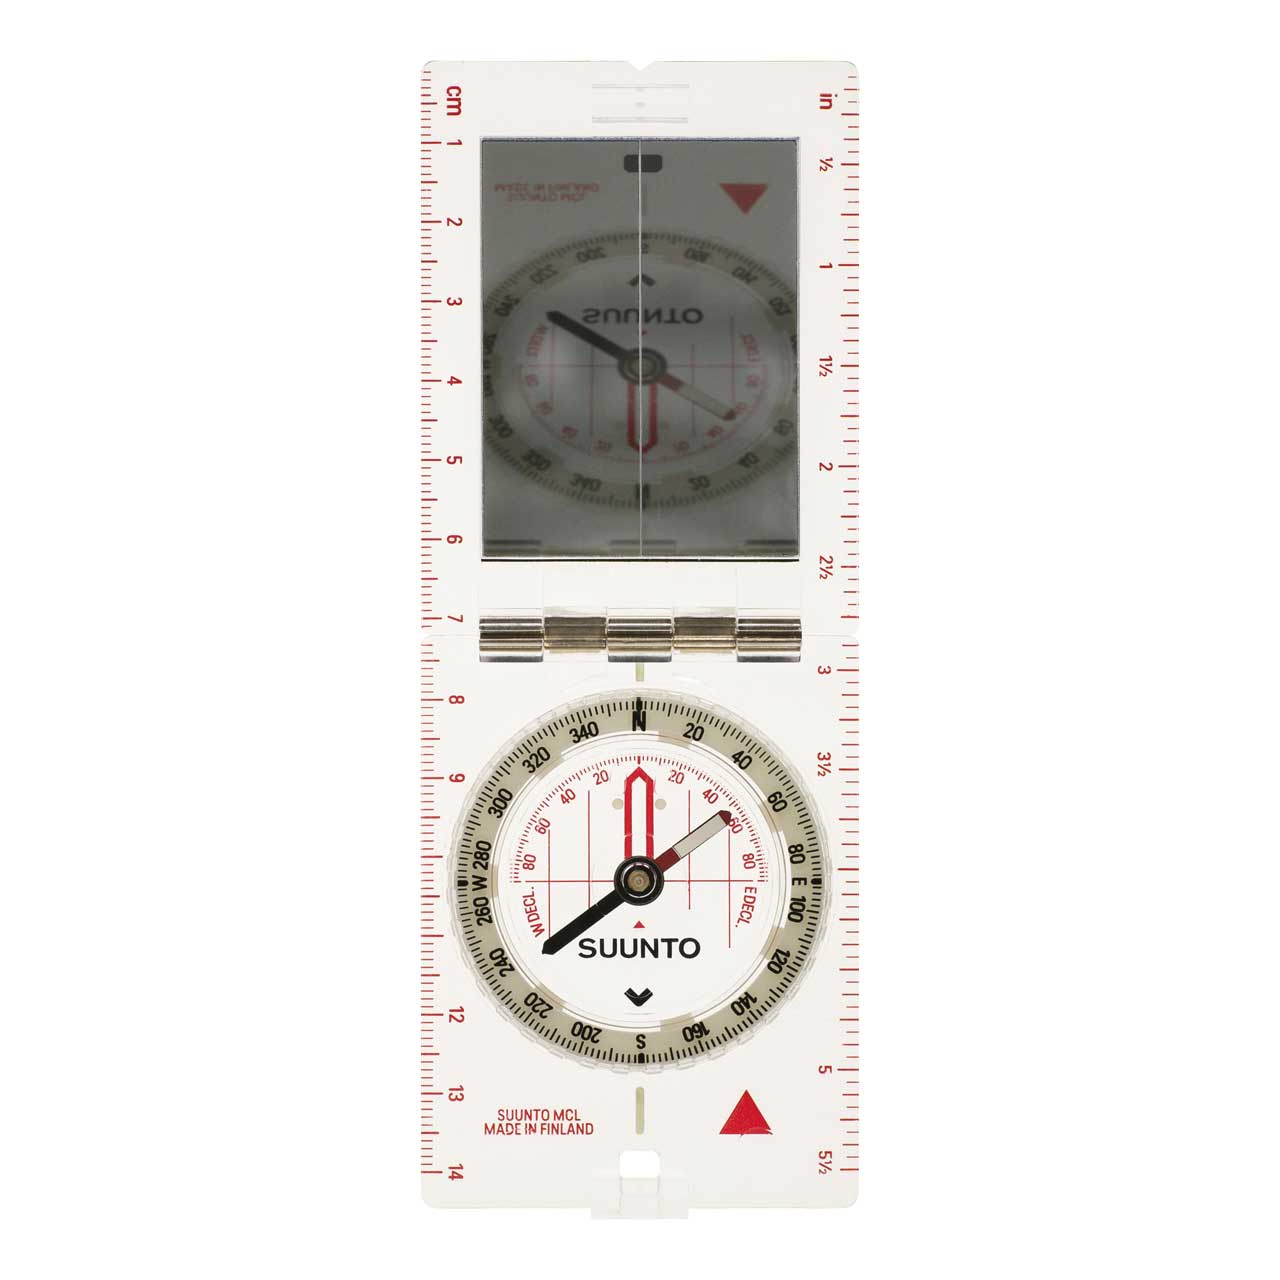 SUUNTO MCL Spiegelkompass, 360-Grad-Einteilung, Spiegel, Kimme, Dämmerungsmarken, Deklinationsskala